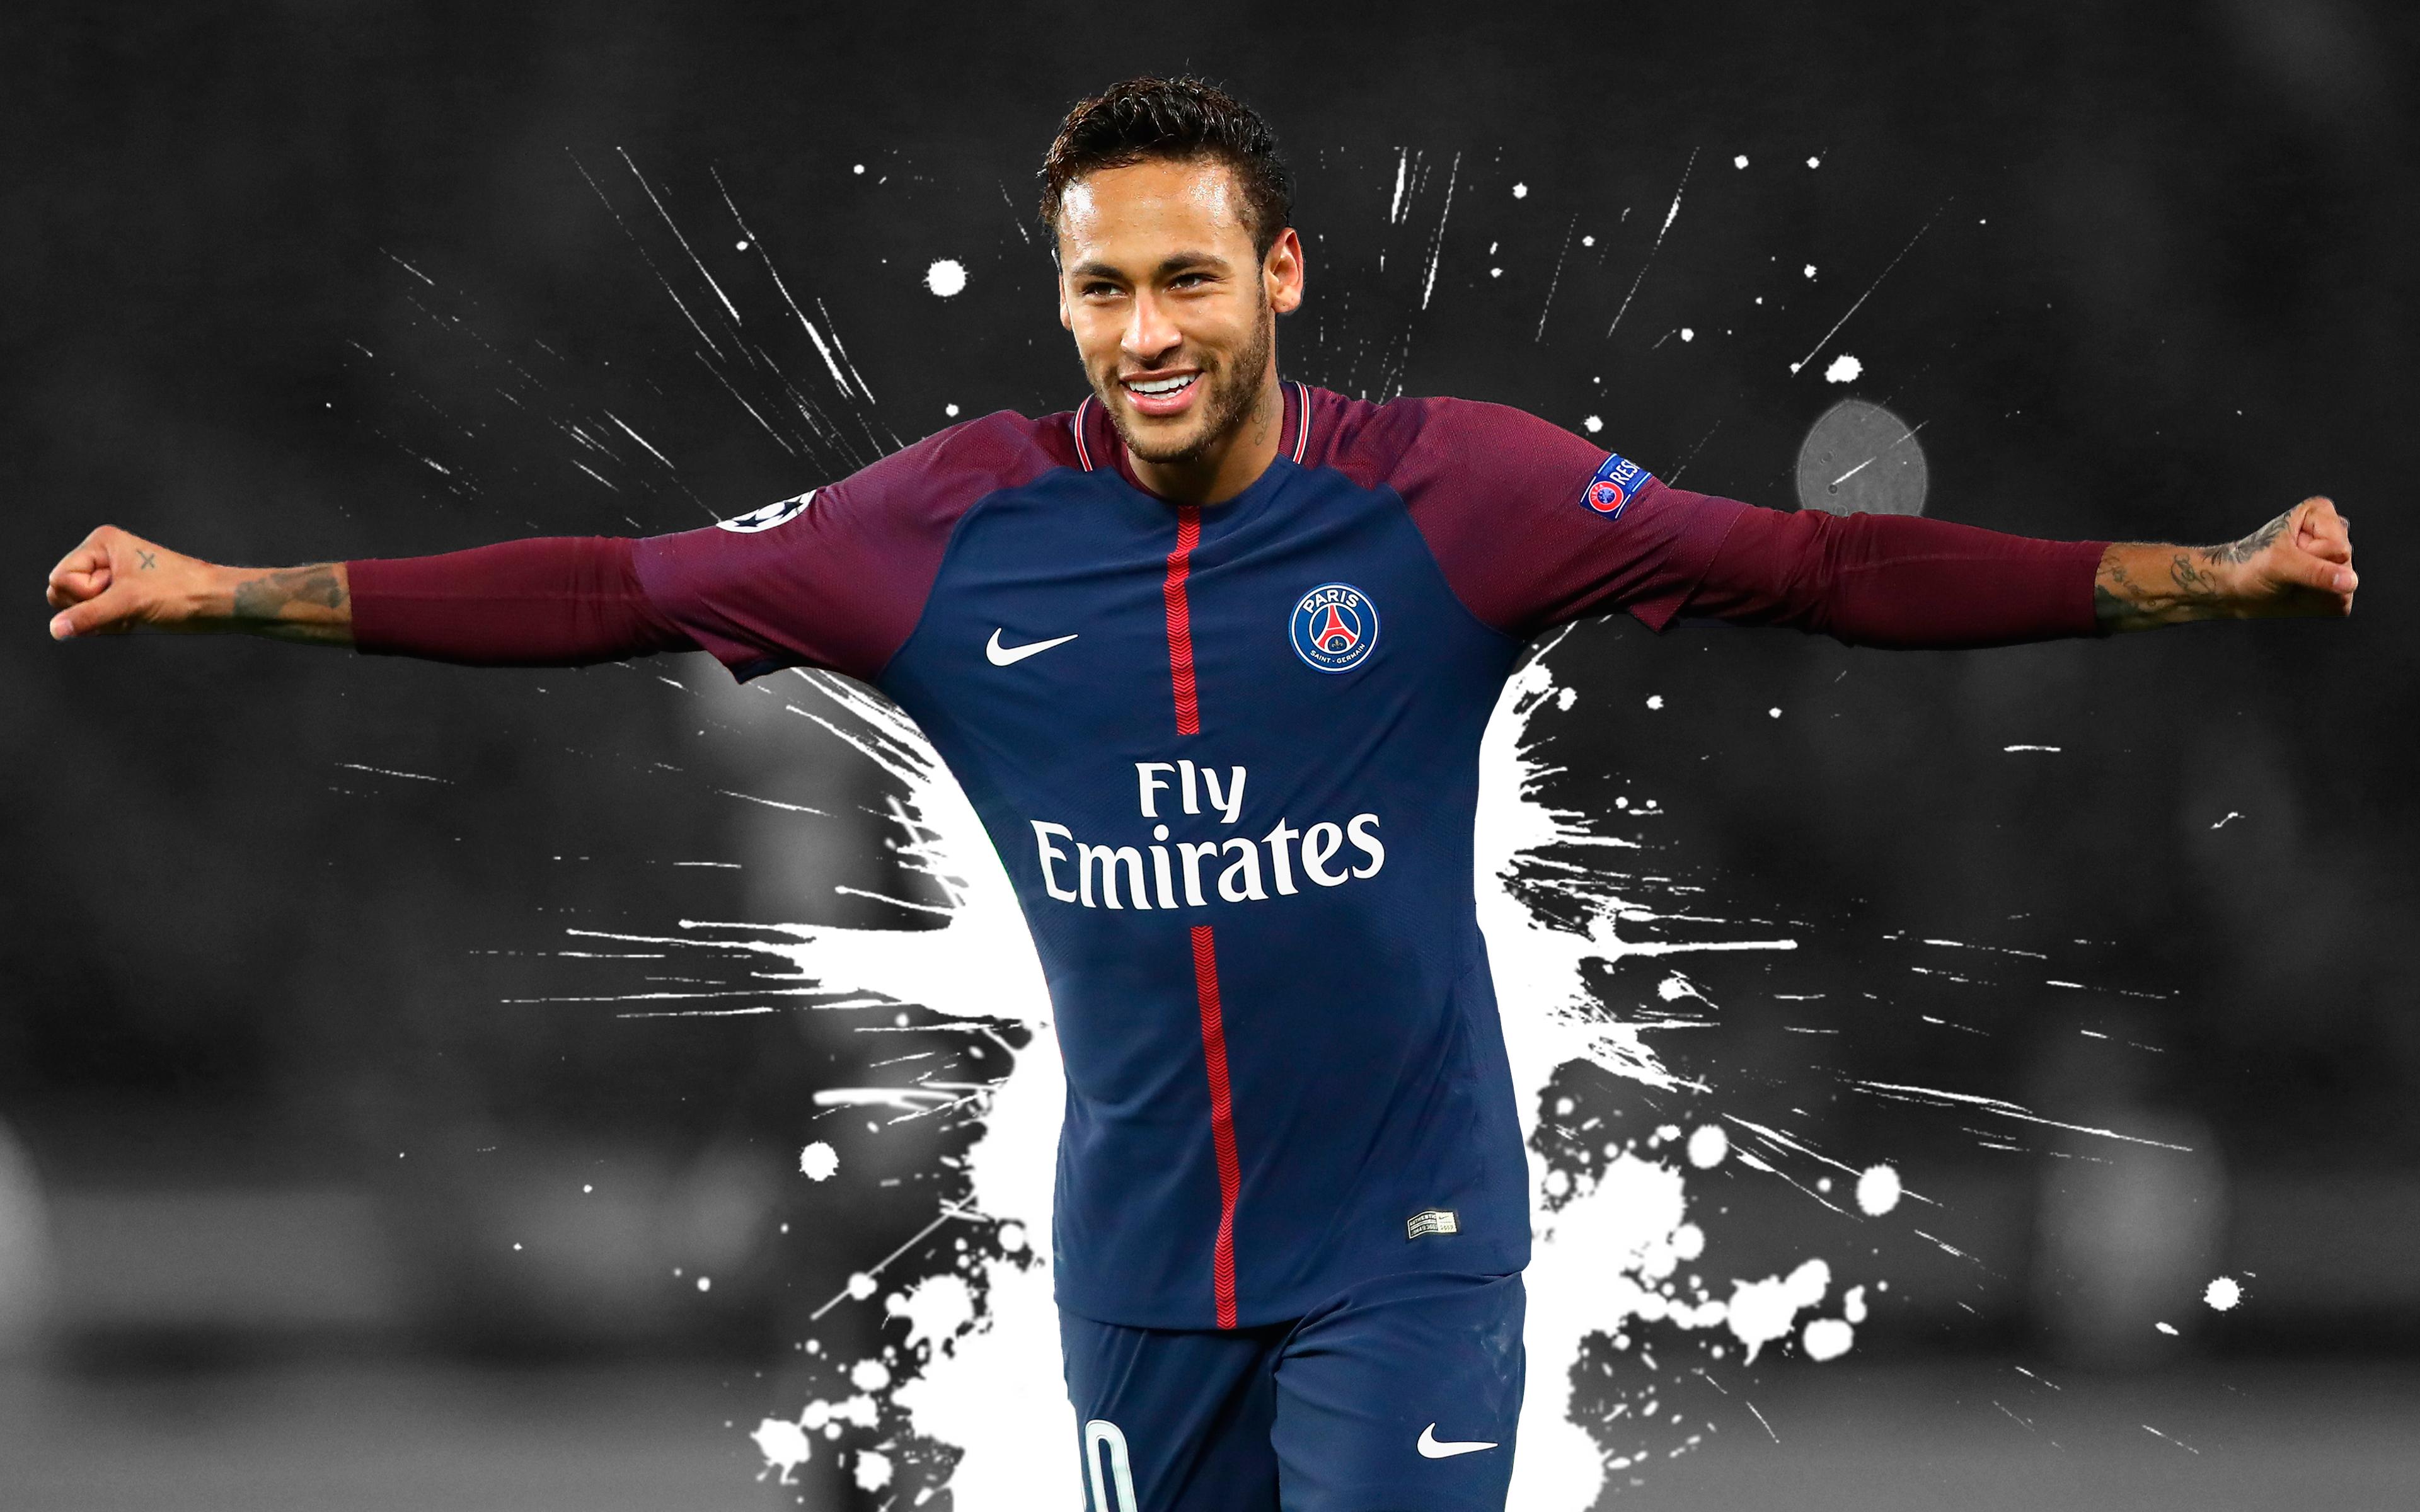 3840 x 2400 · jpeg - Neymar Jr - PSG 4k Ultra HD Wallpaper | Hintergrund | 3840x2400 | ID ...